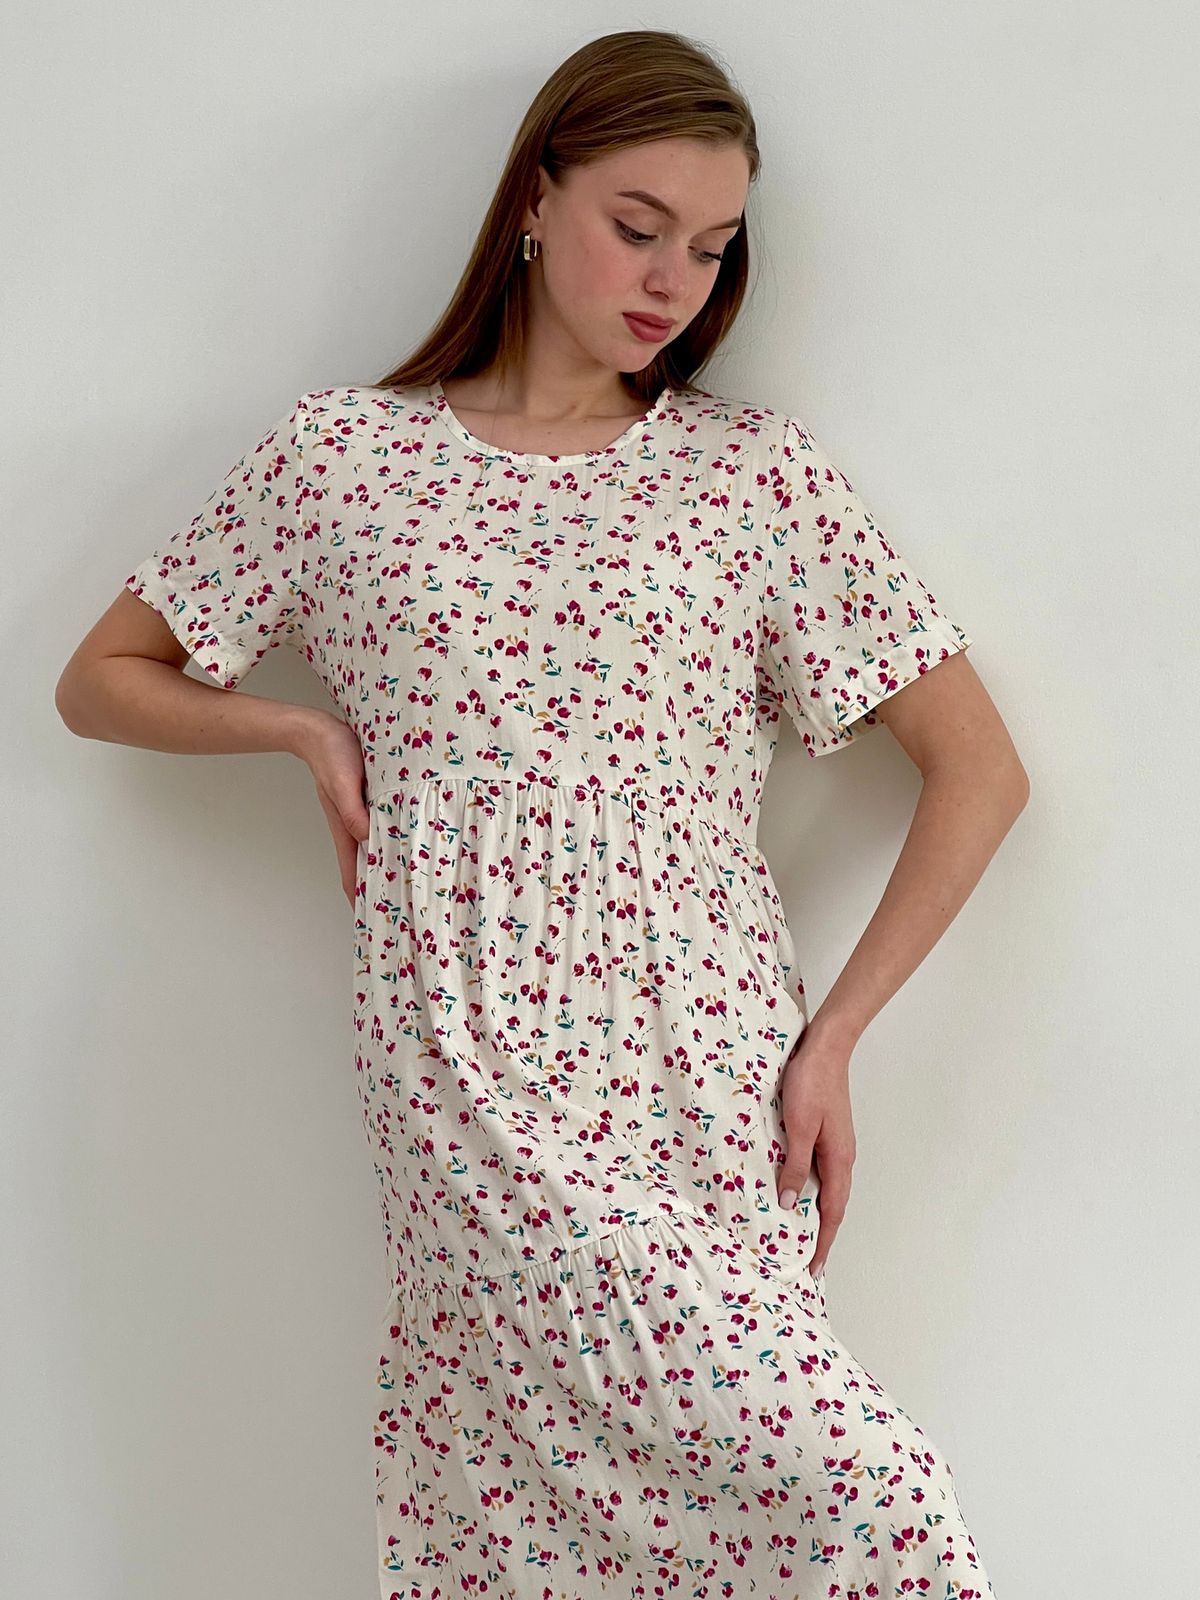 Купить Летнее платье с рюшами в цветочек белое Merlini Казерта 700001266 размер 42-44 (S-M) в интернет-магазине